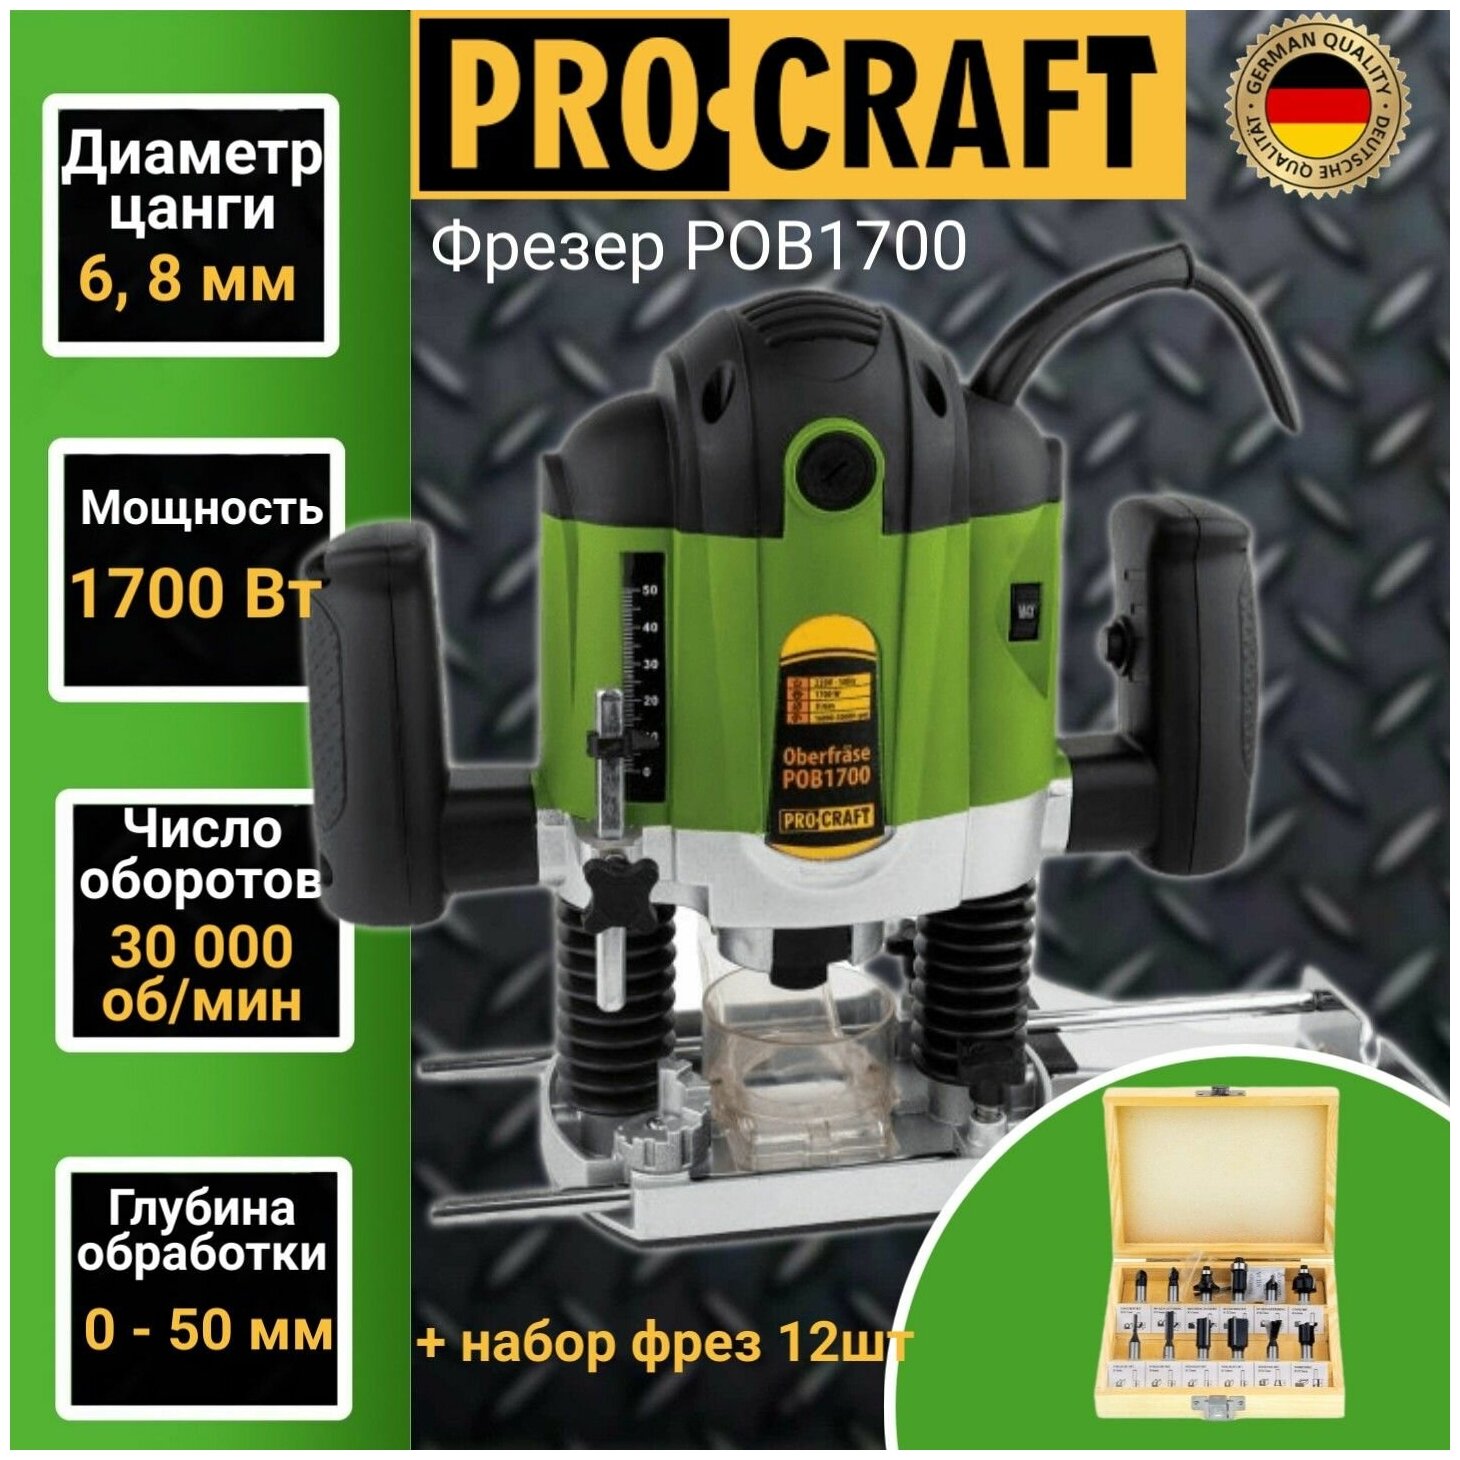 Фрезер электрический Procraft POB-1700 (набор фрез 12шт) цанга 6/8мм 1700Вт 30000об/мин